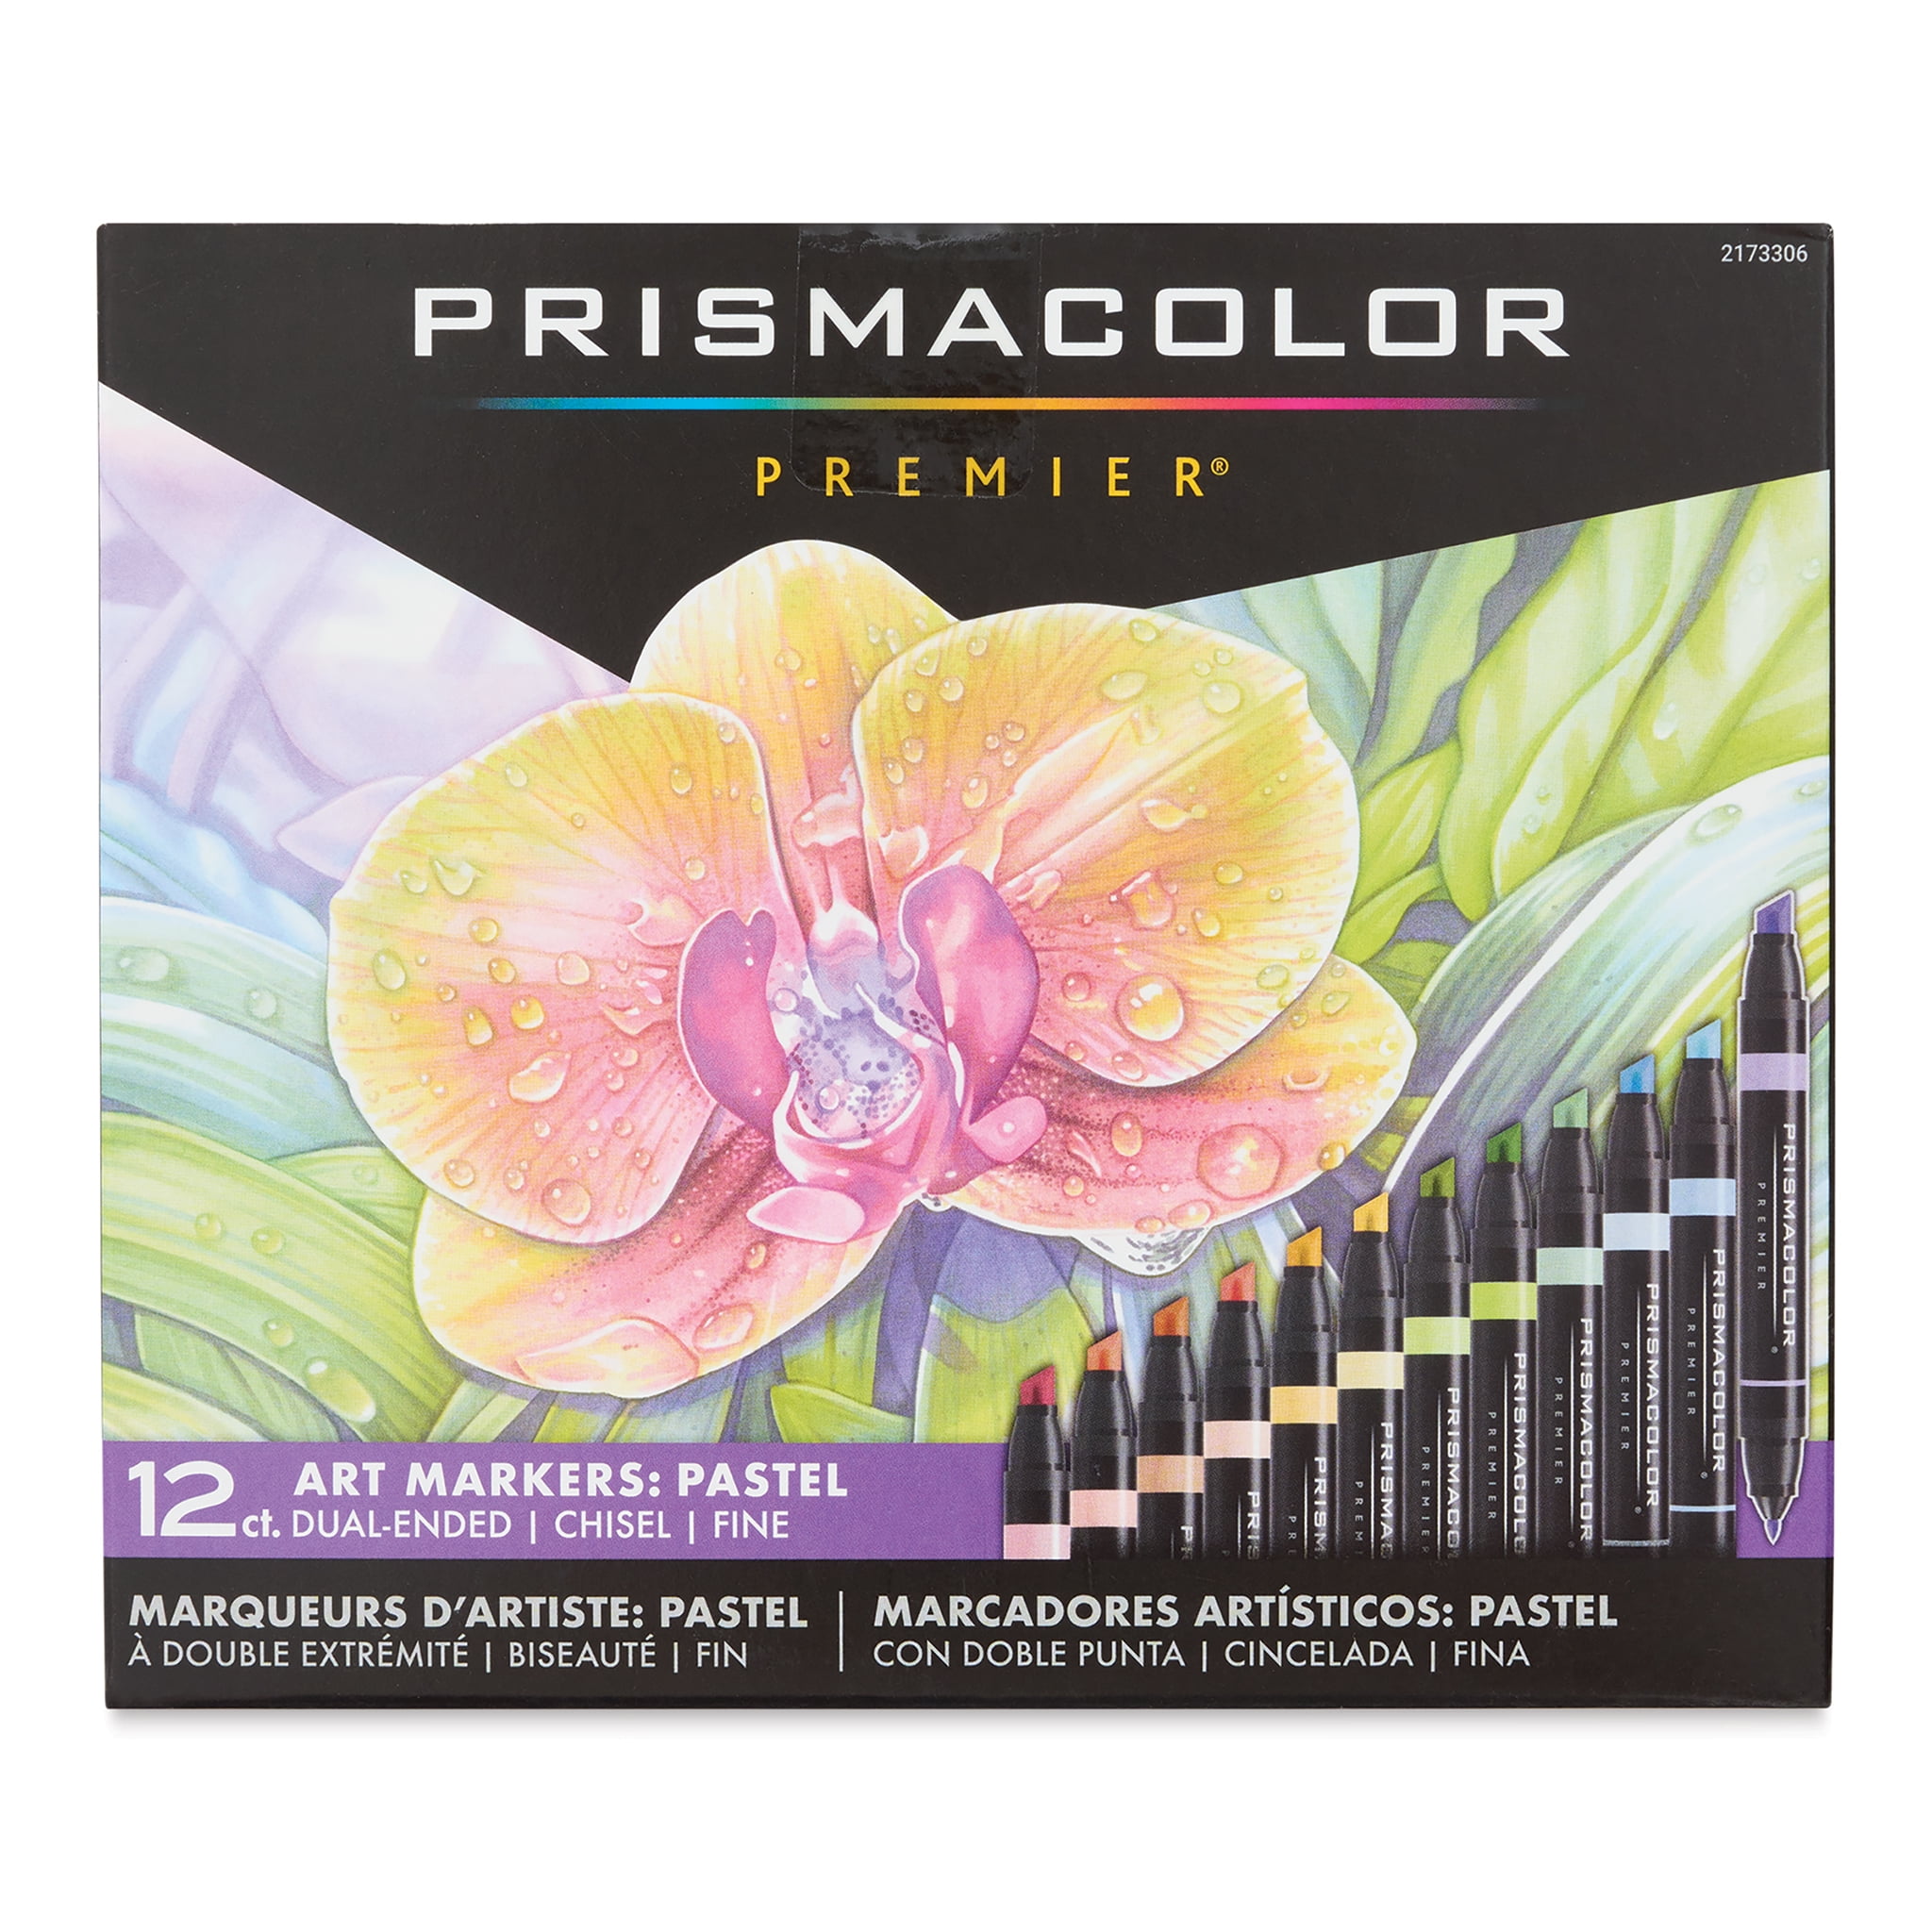 Prismacolor Technique, Art Supplies and Digital Art Lessons, Landscape Drawing Set, 25 Count, Adult